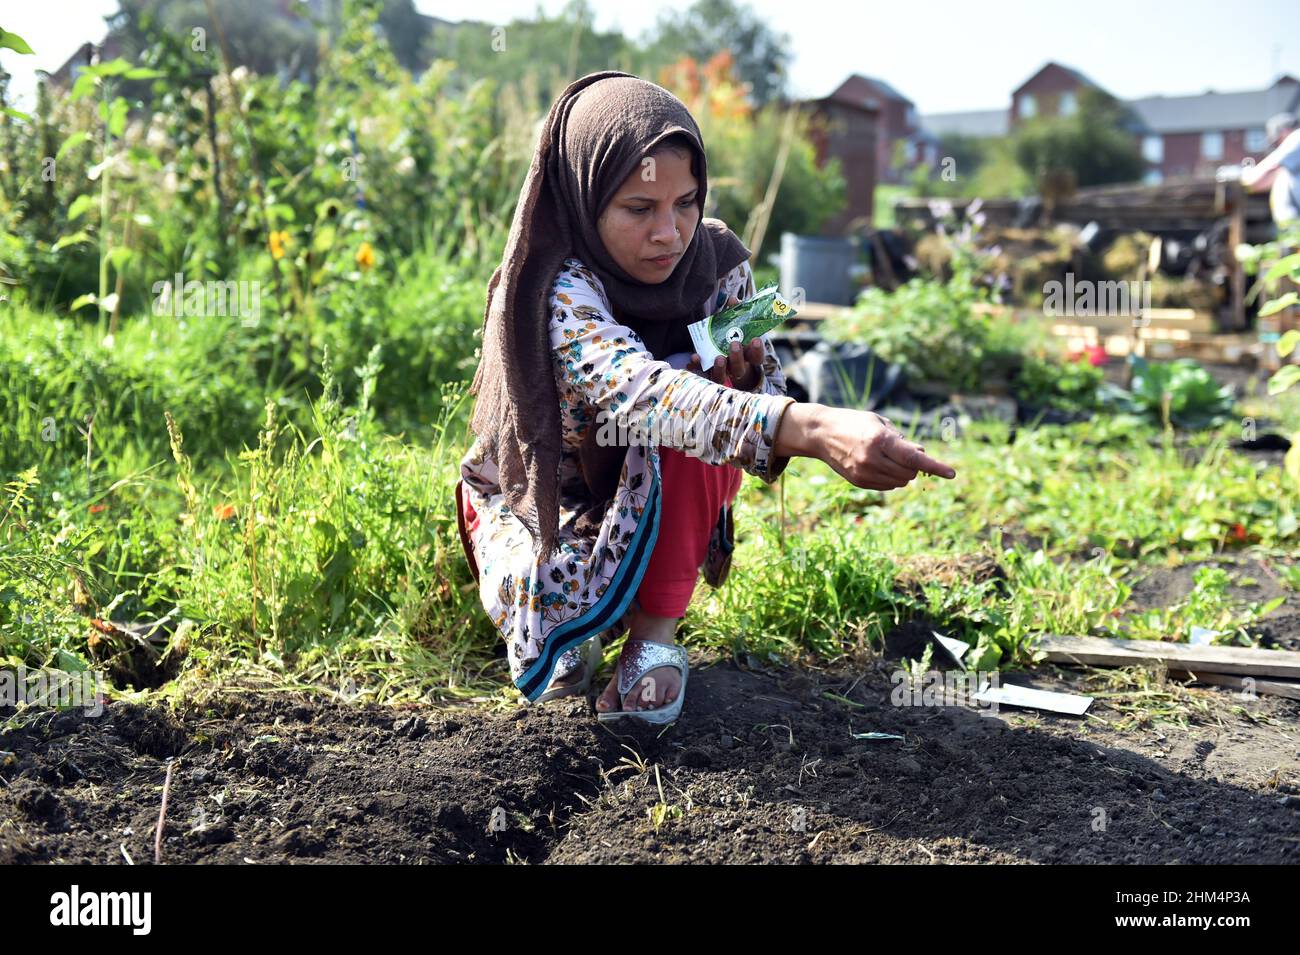 Eine junge Frau sät Samen auf einer Gemeinschaftszuteilung, Leeds, Großbritannien Stockfoto